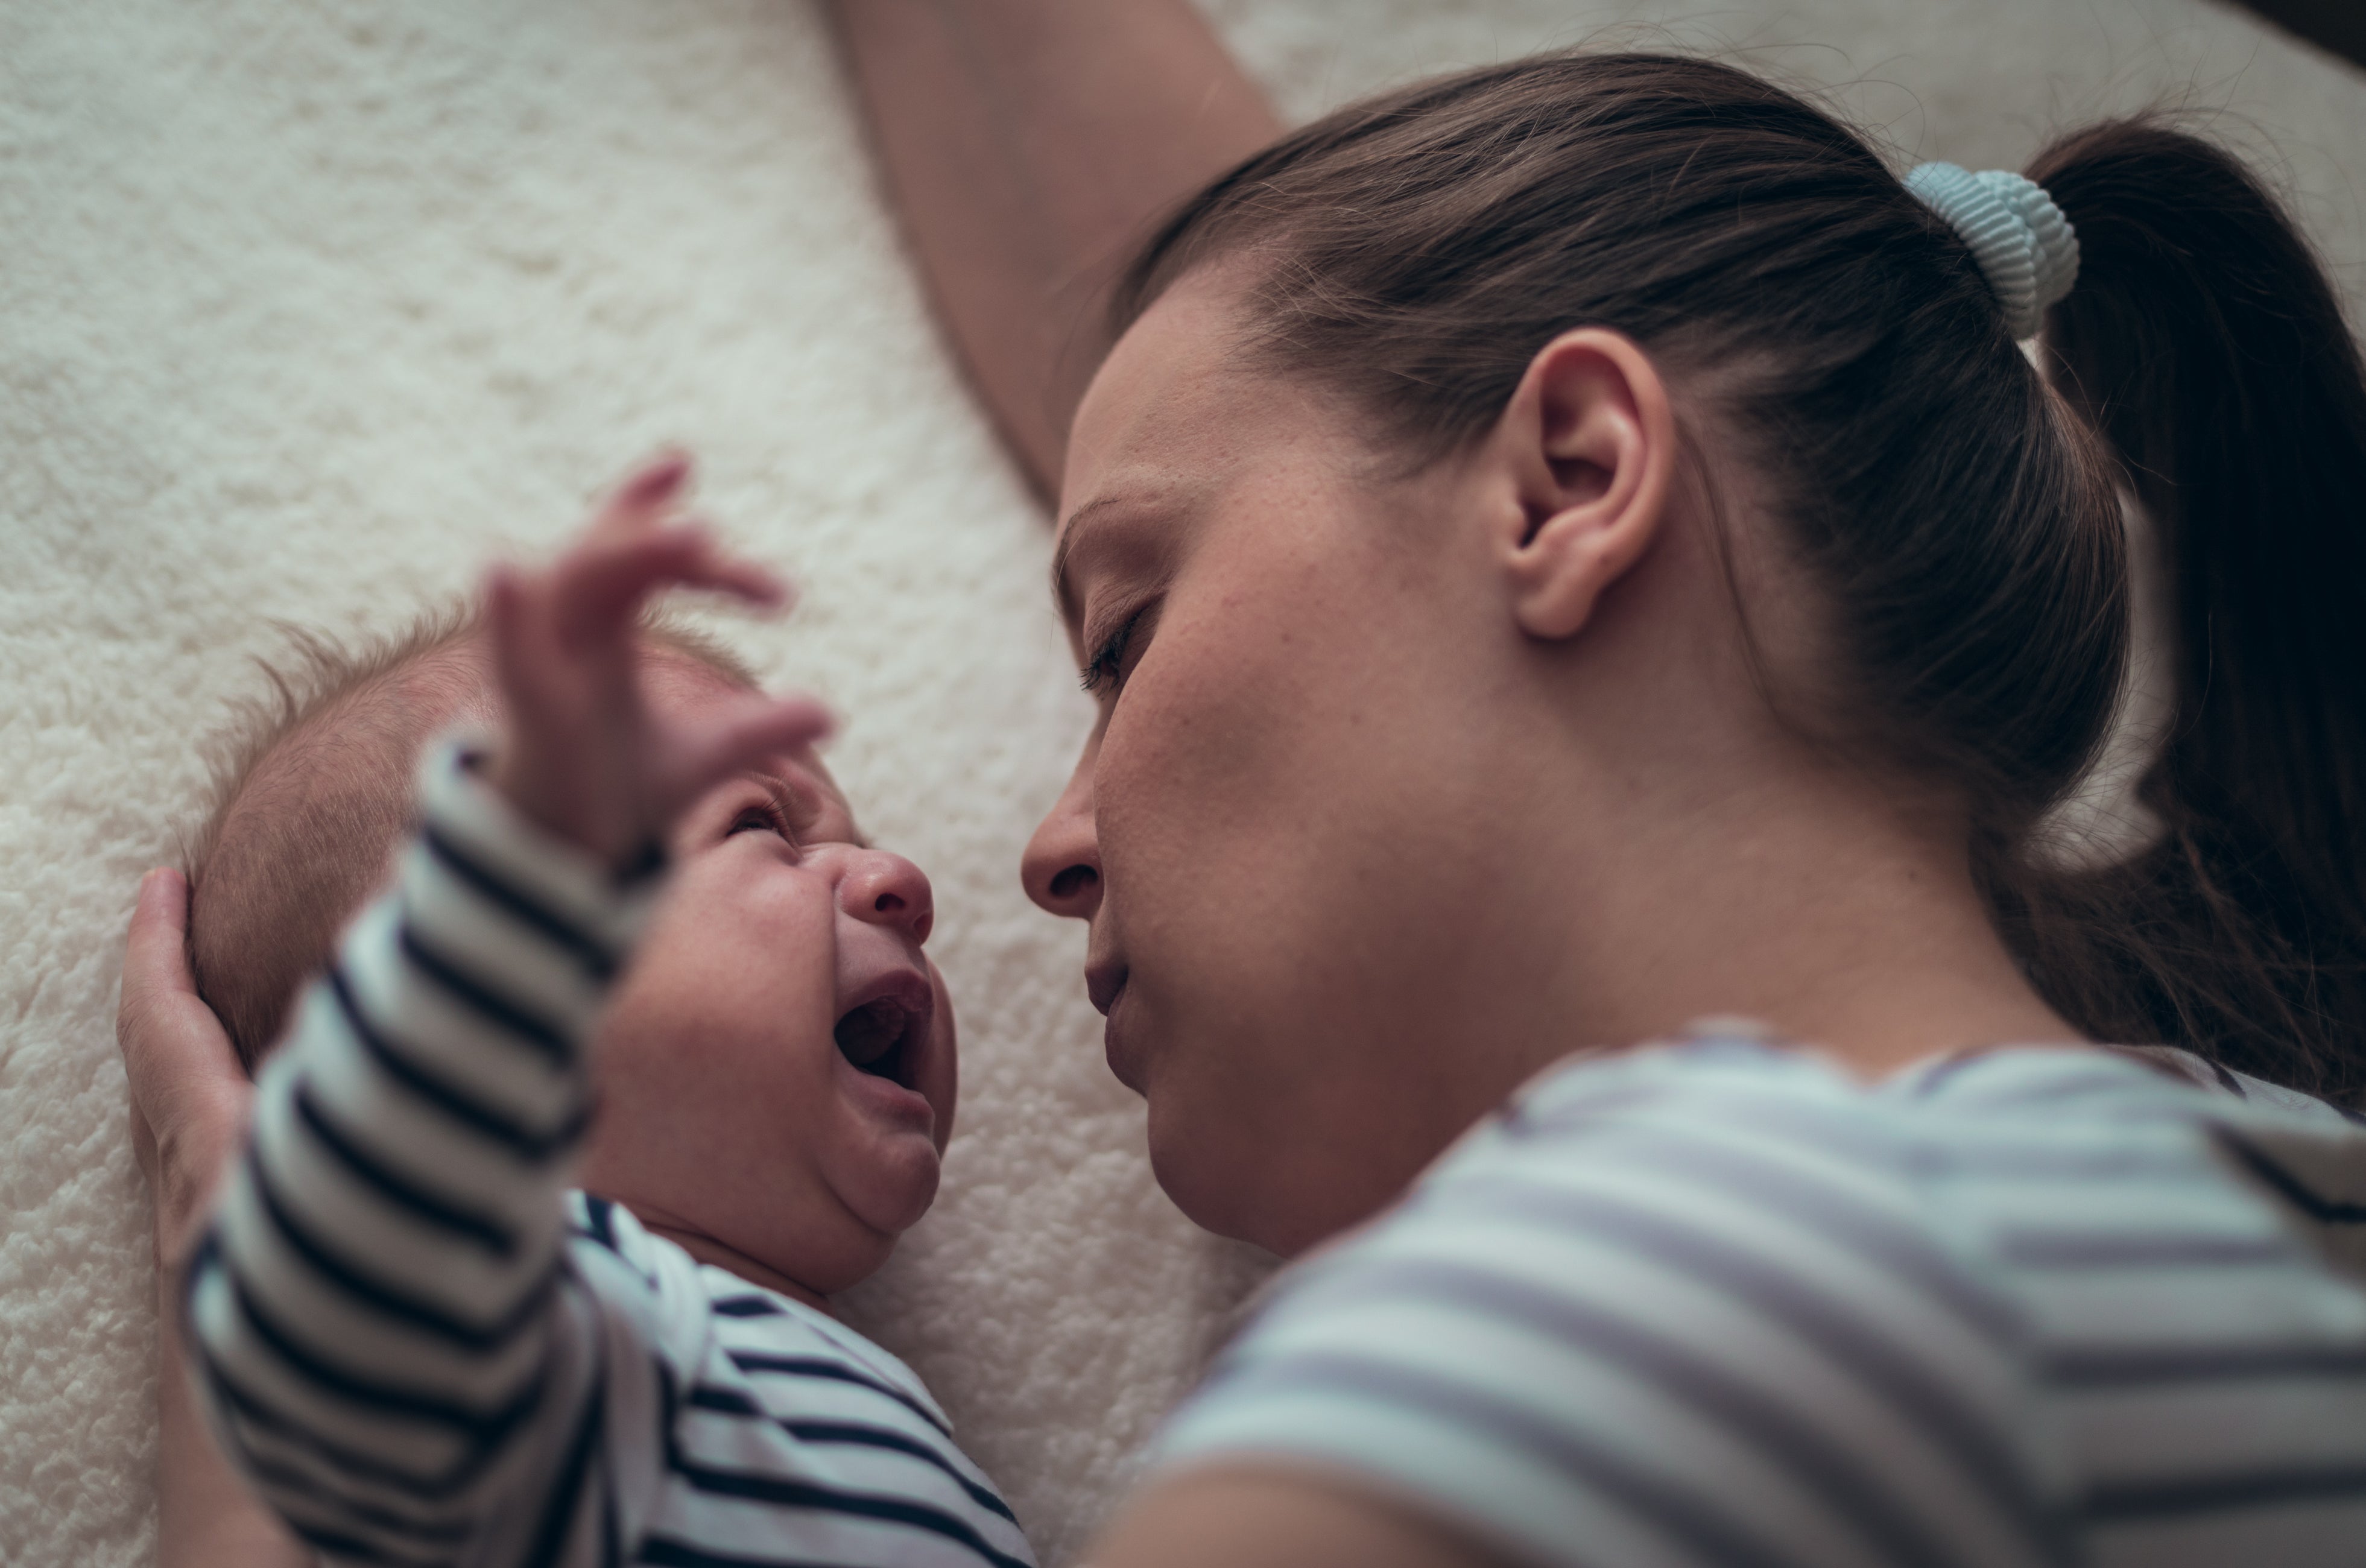 Noites sem dormir aceleram o envelhecimento das mães de bebês, diz estudo